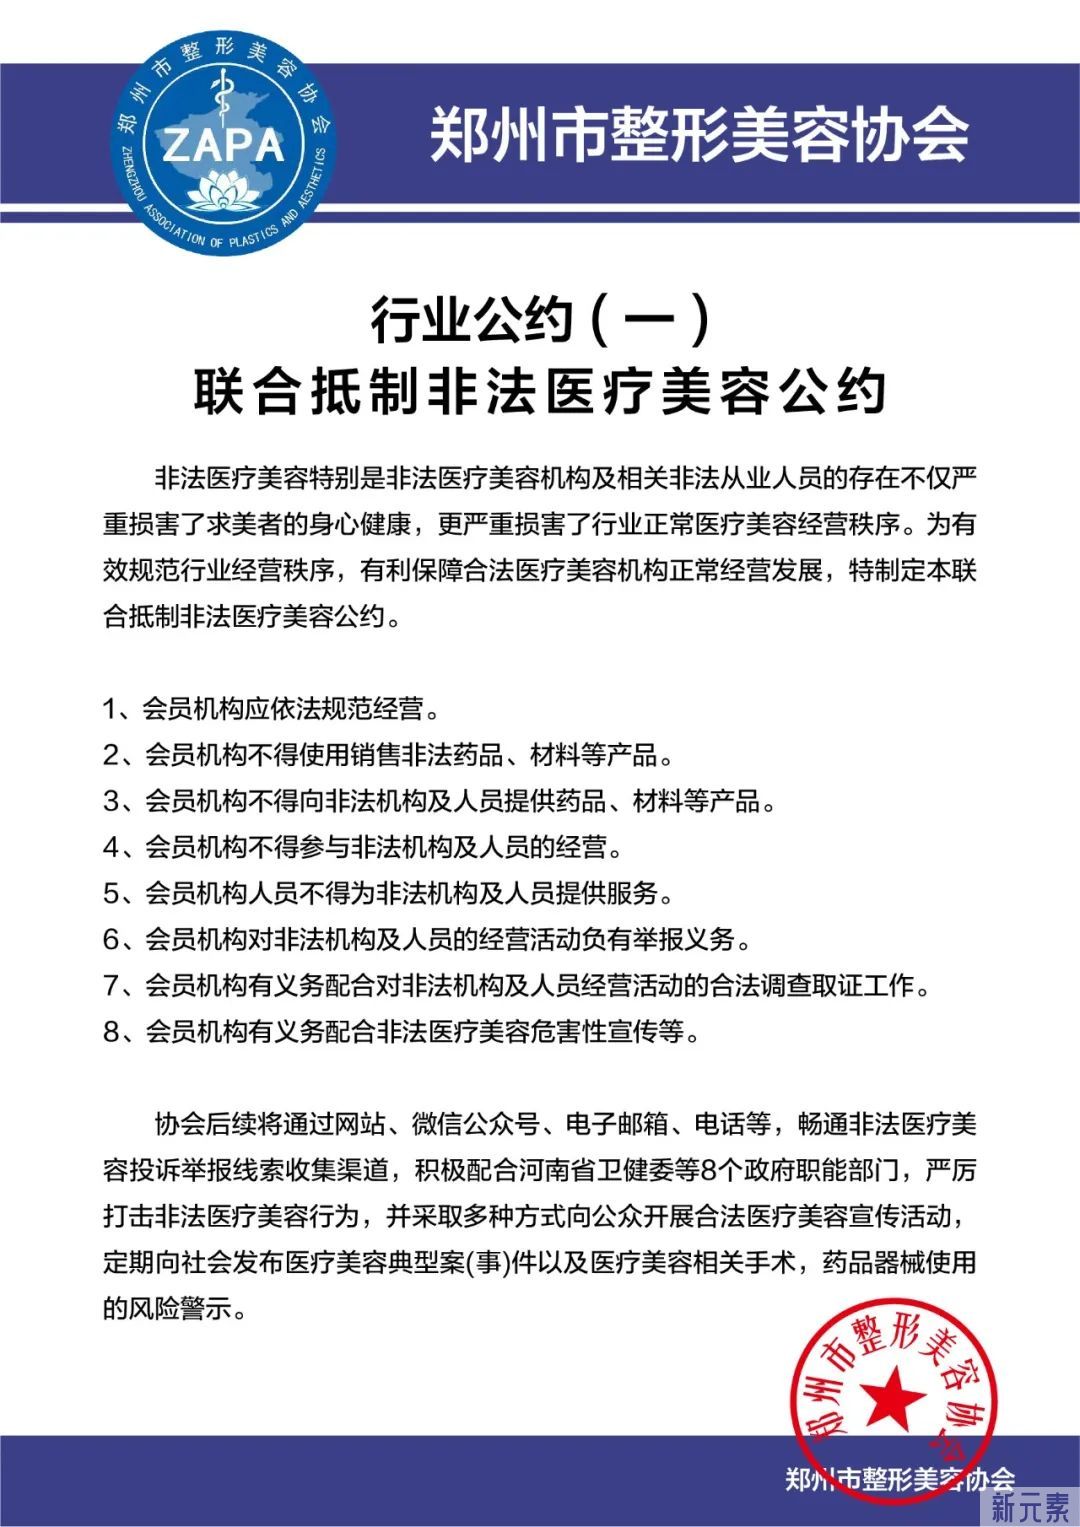 郑州市整形美容协会发布郑州市医疗美容行业自律公约 图片-3